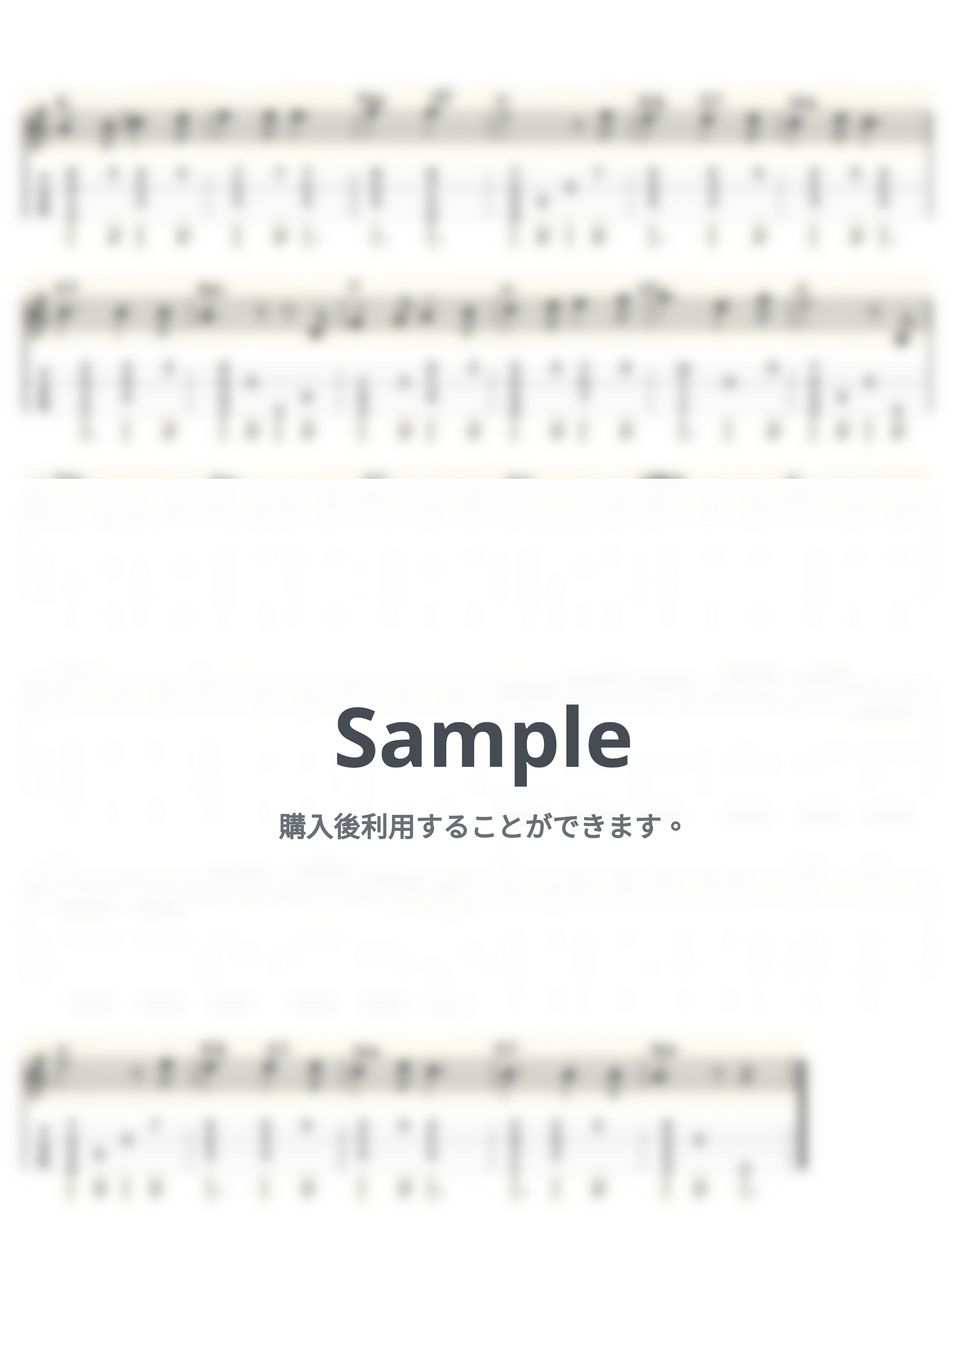 スメタナ - モルダウ～交響詩「わが祖国」～ (ｳｸﾚﾚｿﾛ / Low-G / 中級) by ukulelepapa